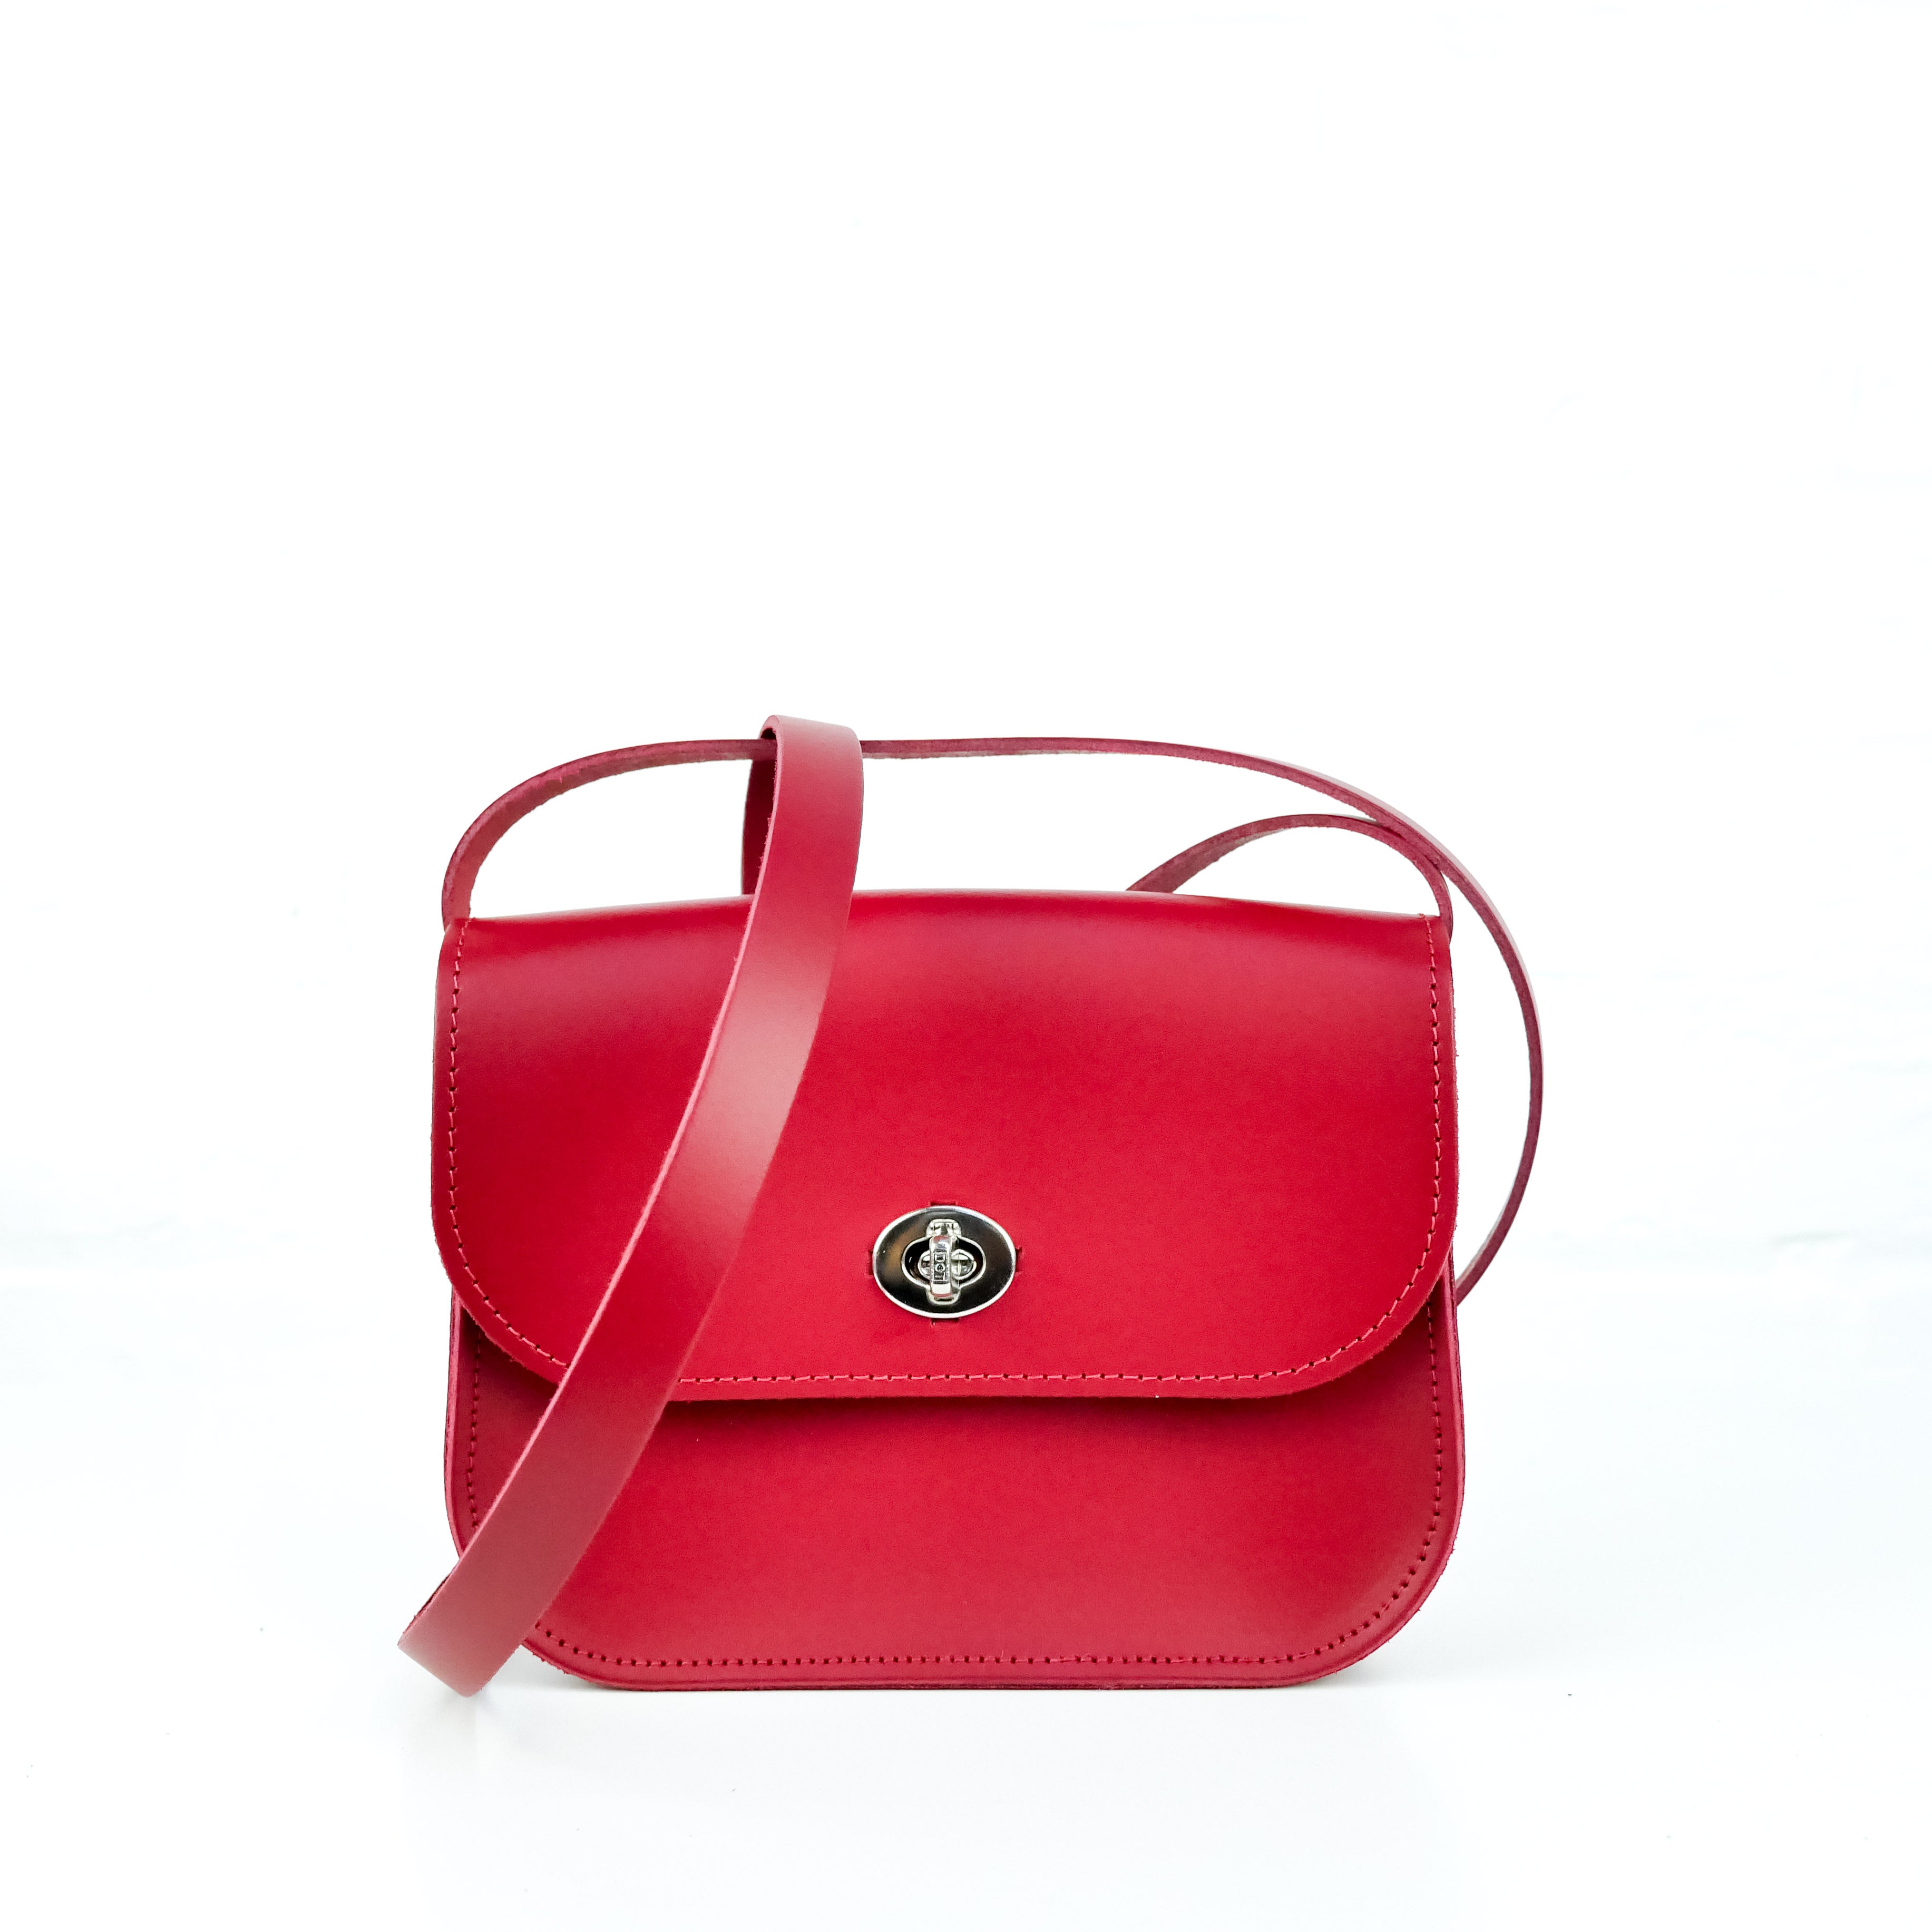 Red Handmade Shoulder Bag | Red Leather Satchel Bag | Leather Crossbody ...